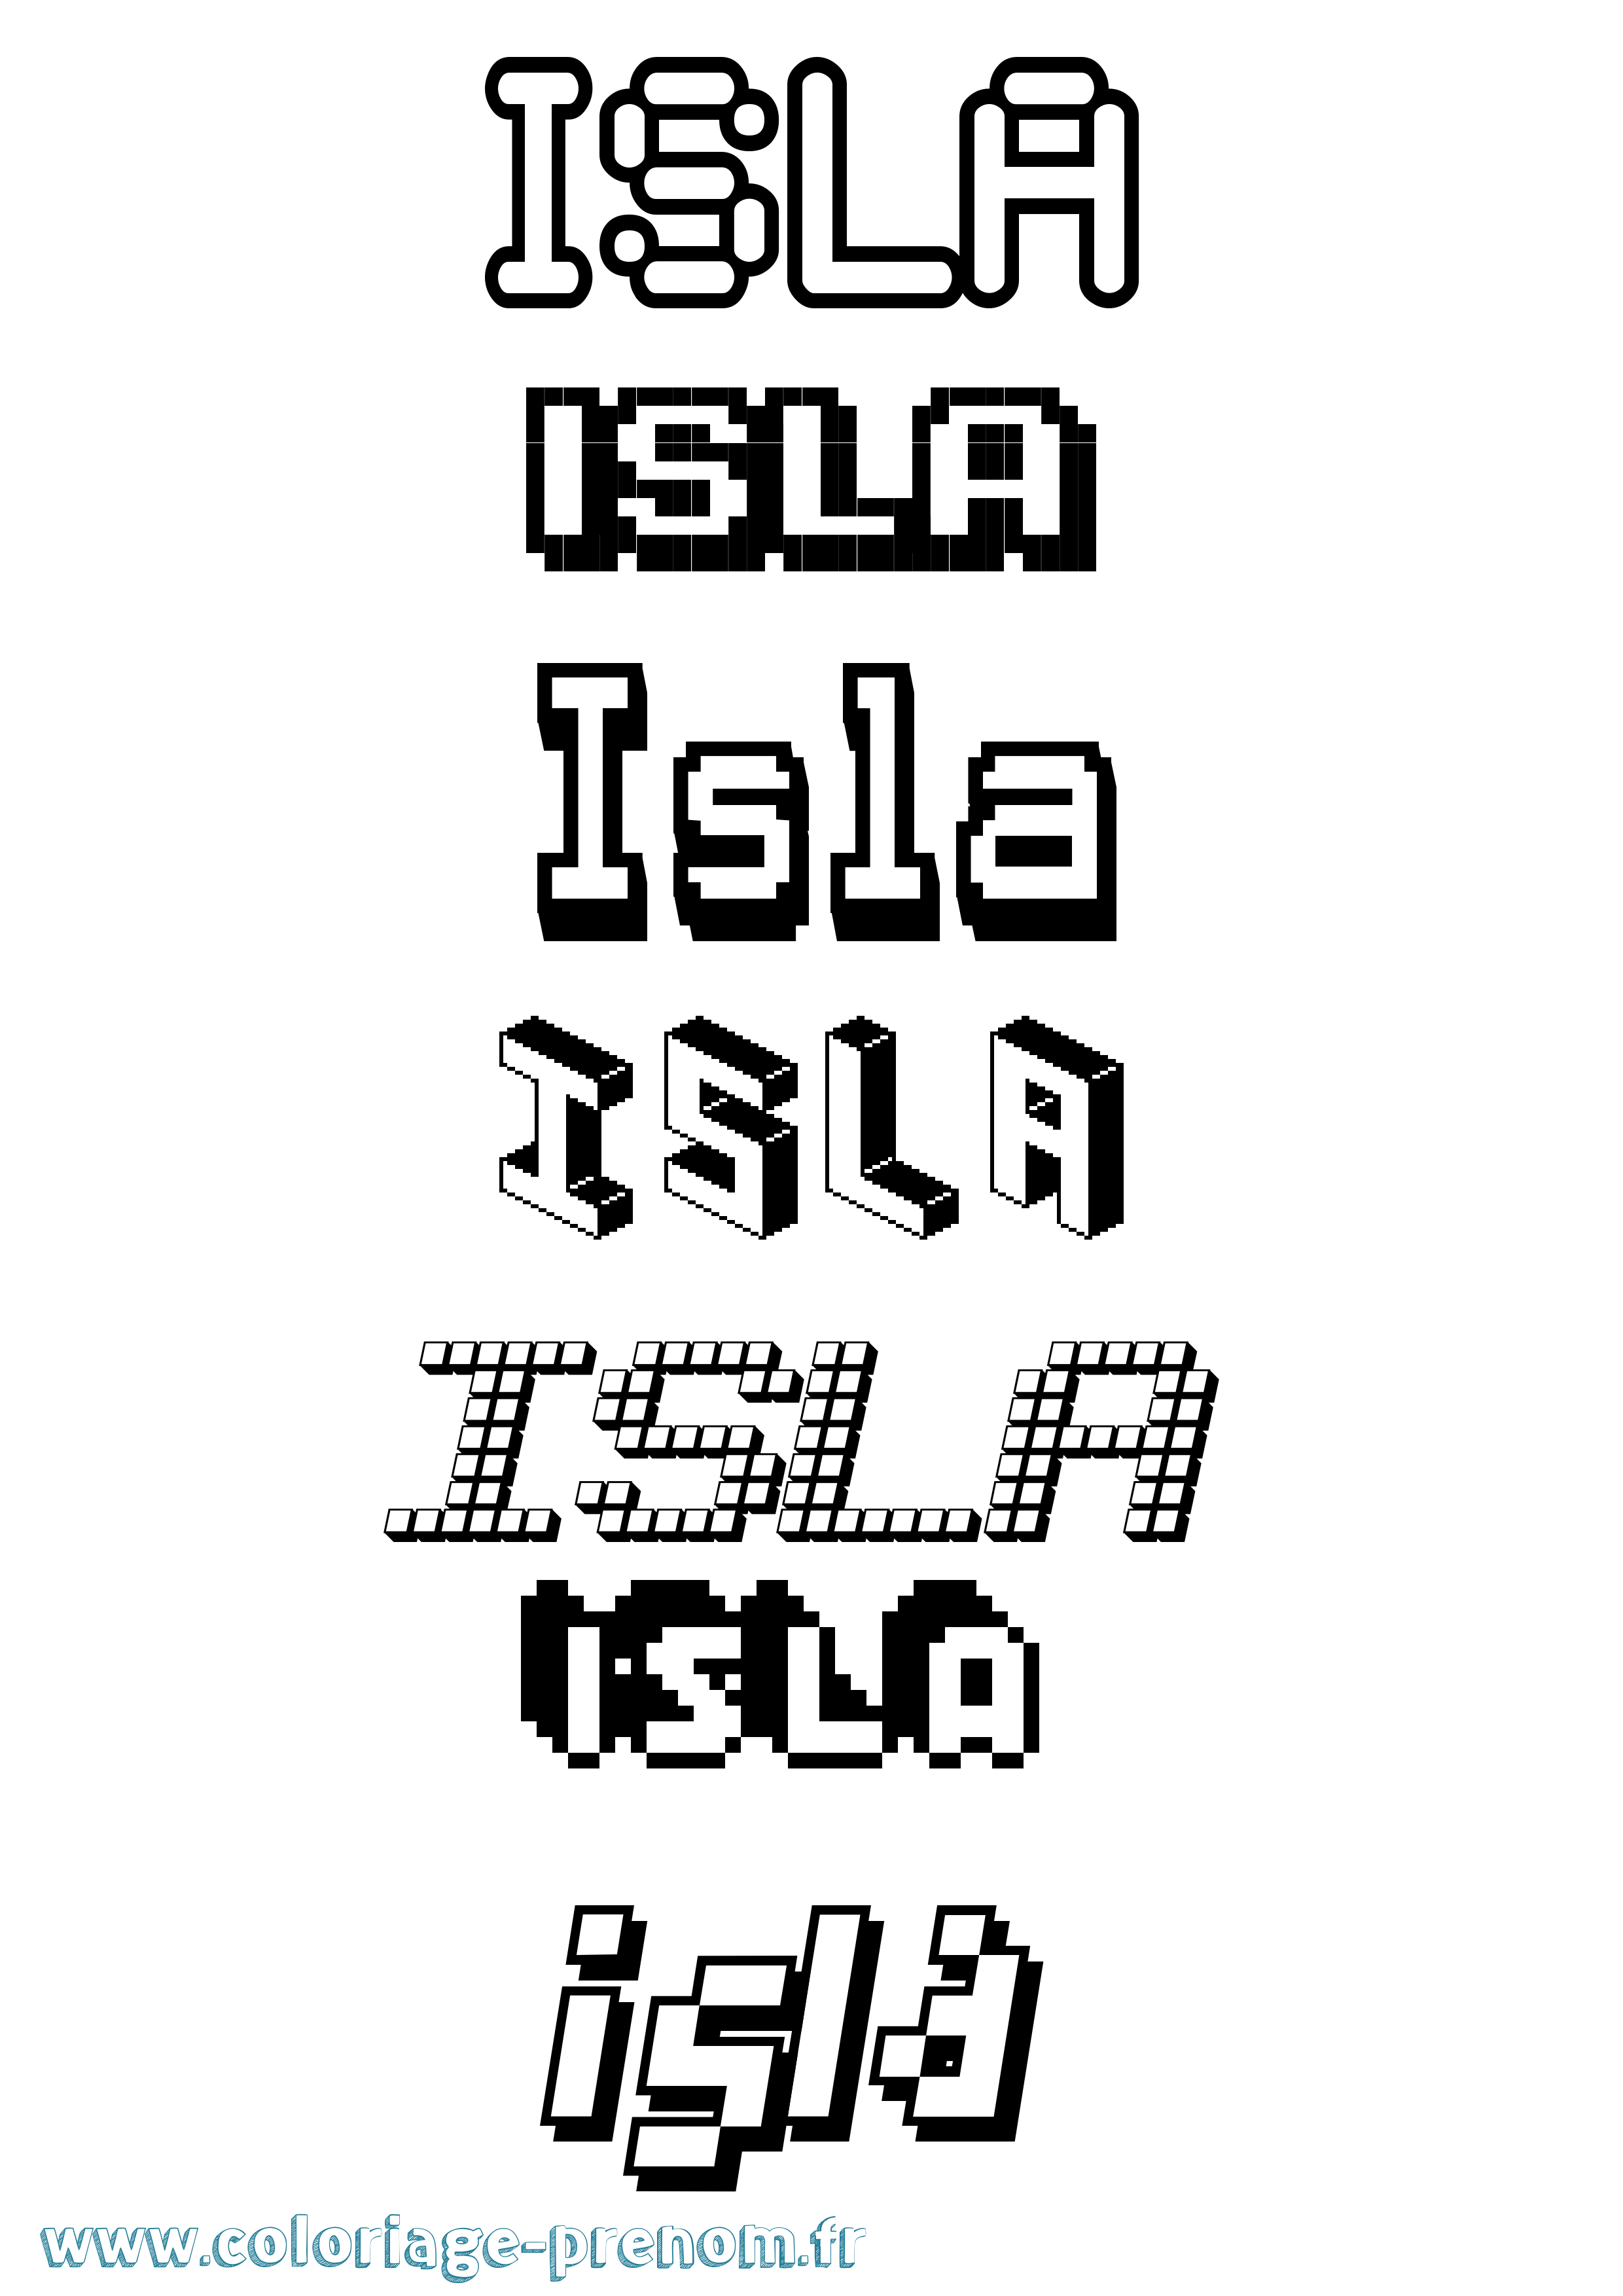 Coloriage prénom Isla Pixel